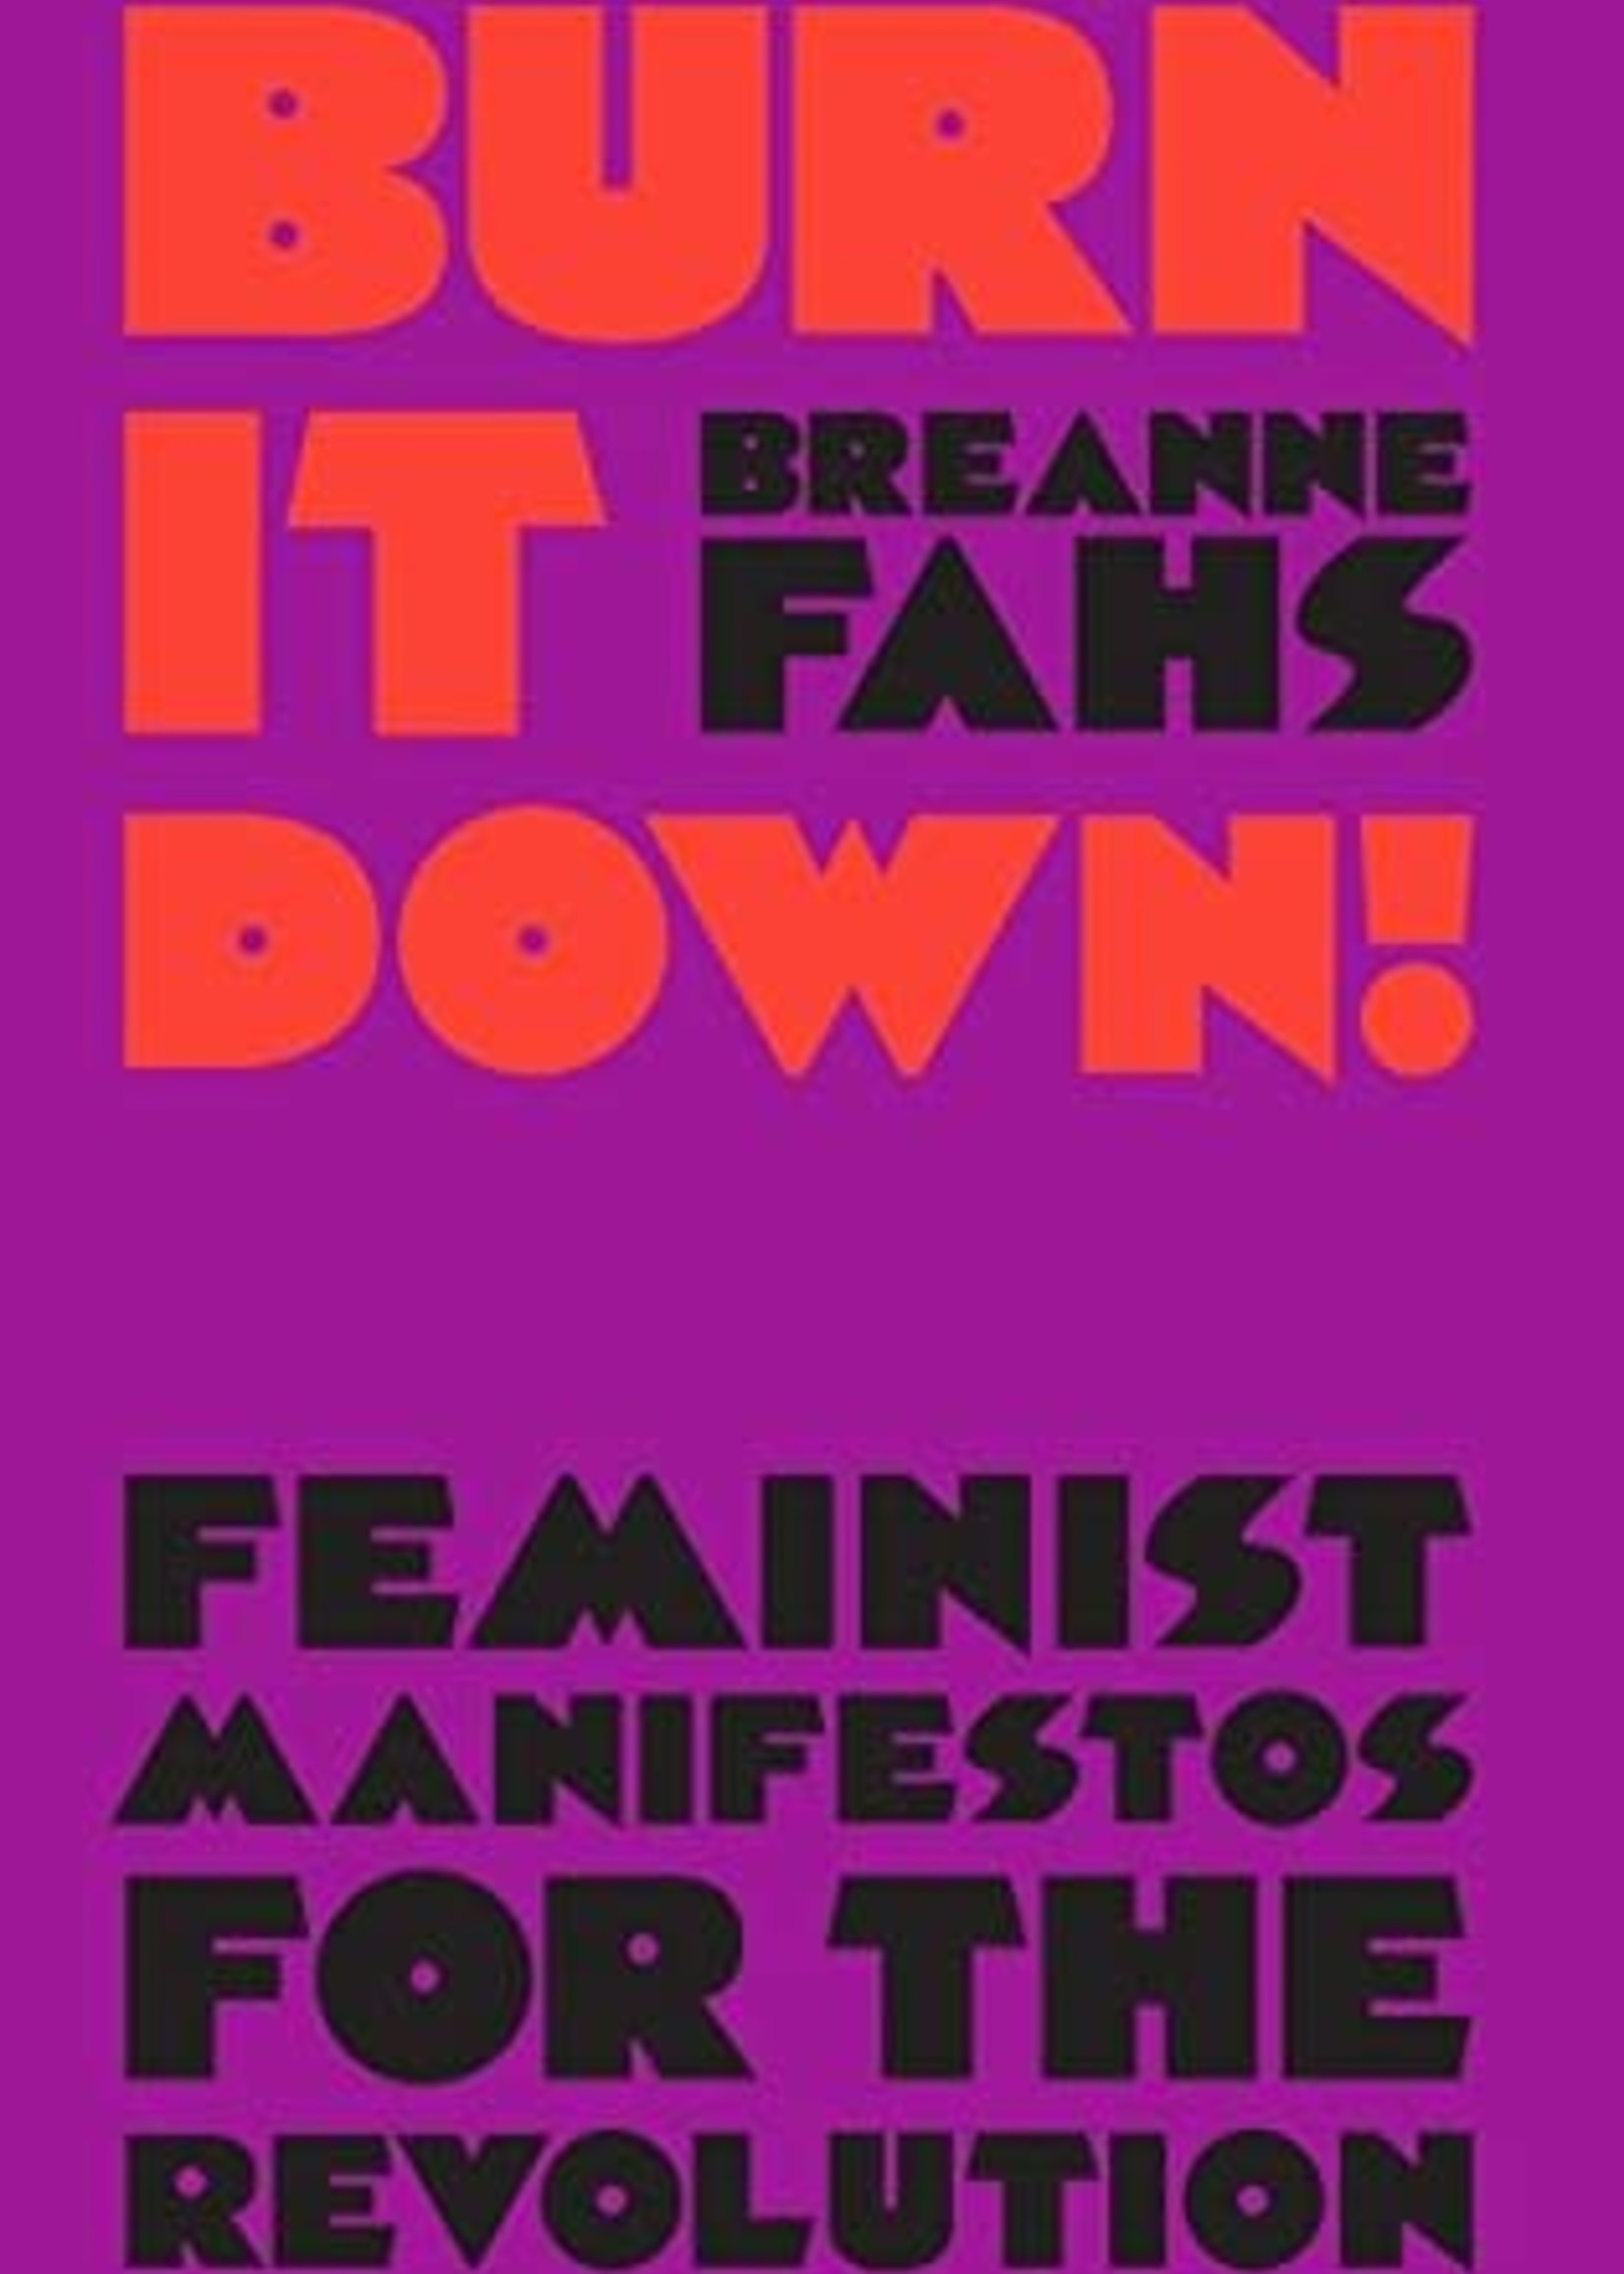 Burn It Down!: Feminist Manifestos for the Revolution by Breanne Fahs